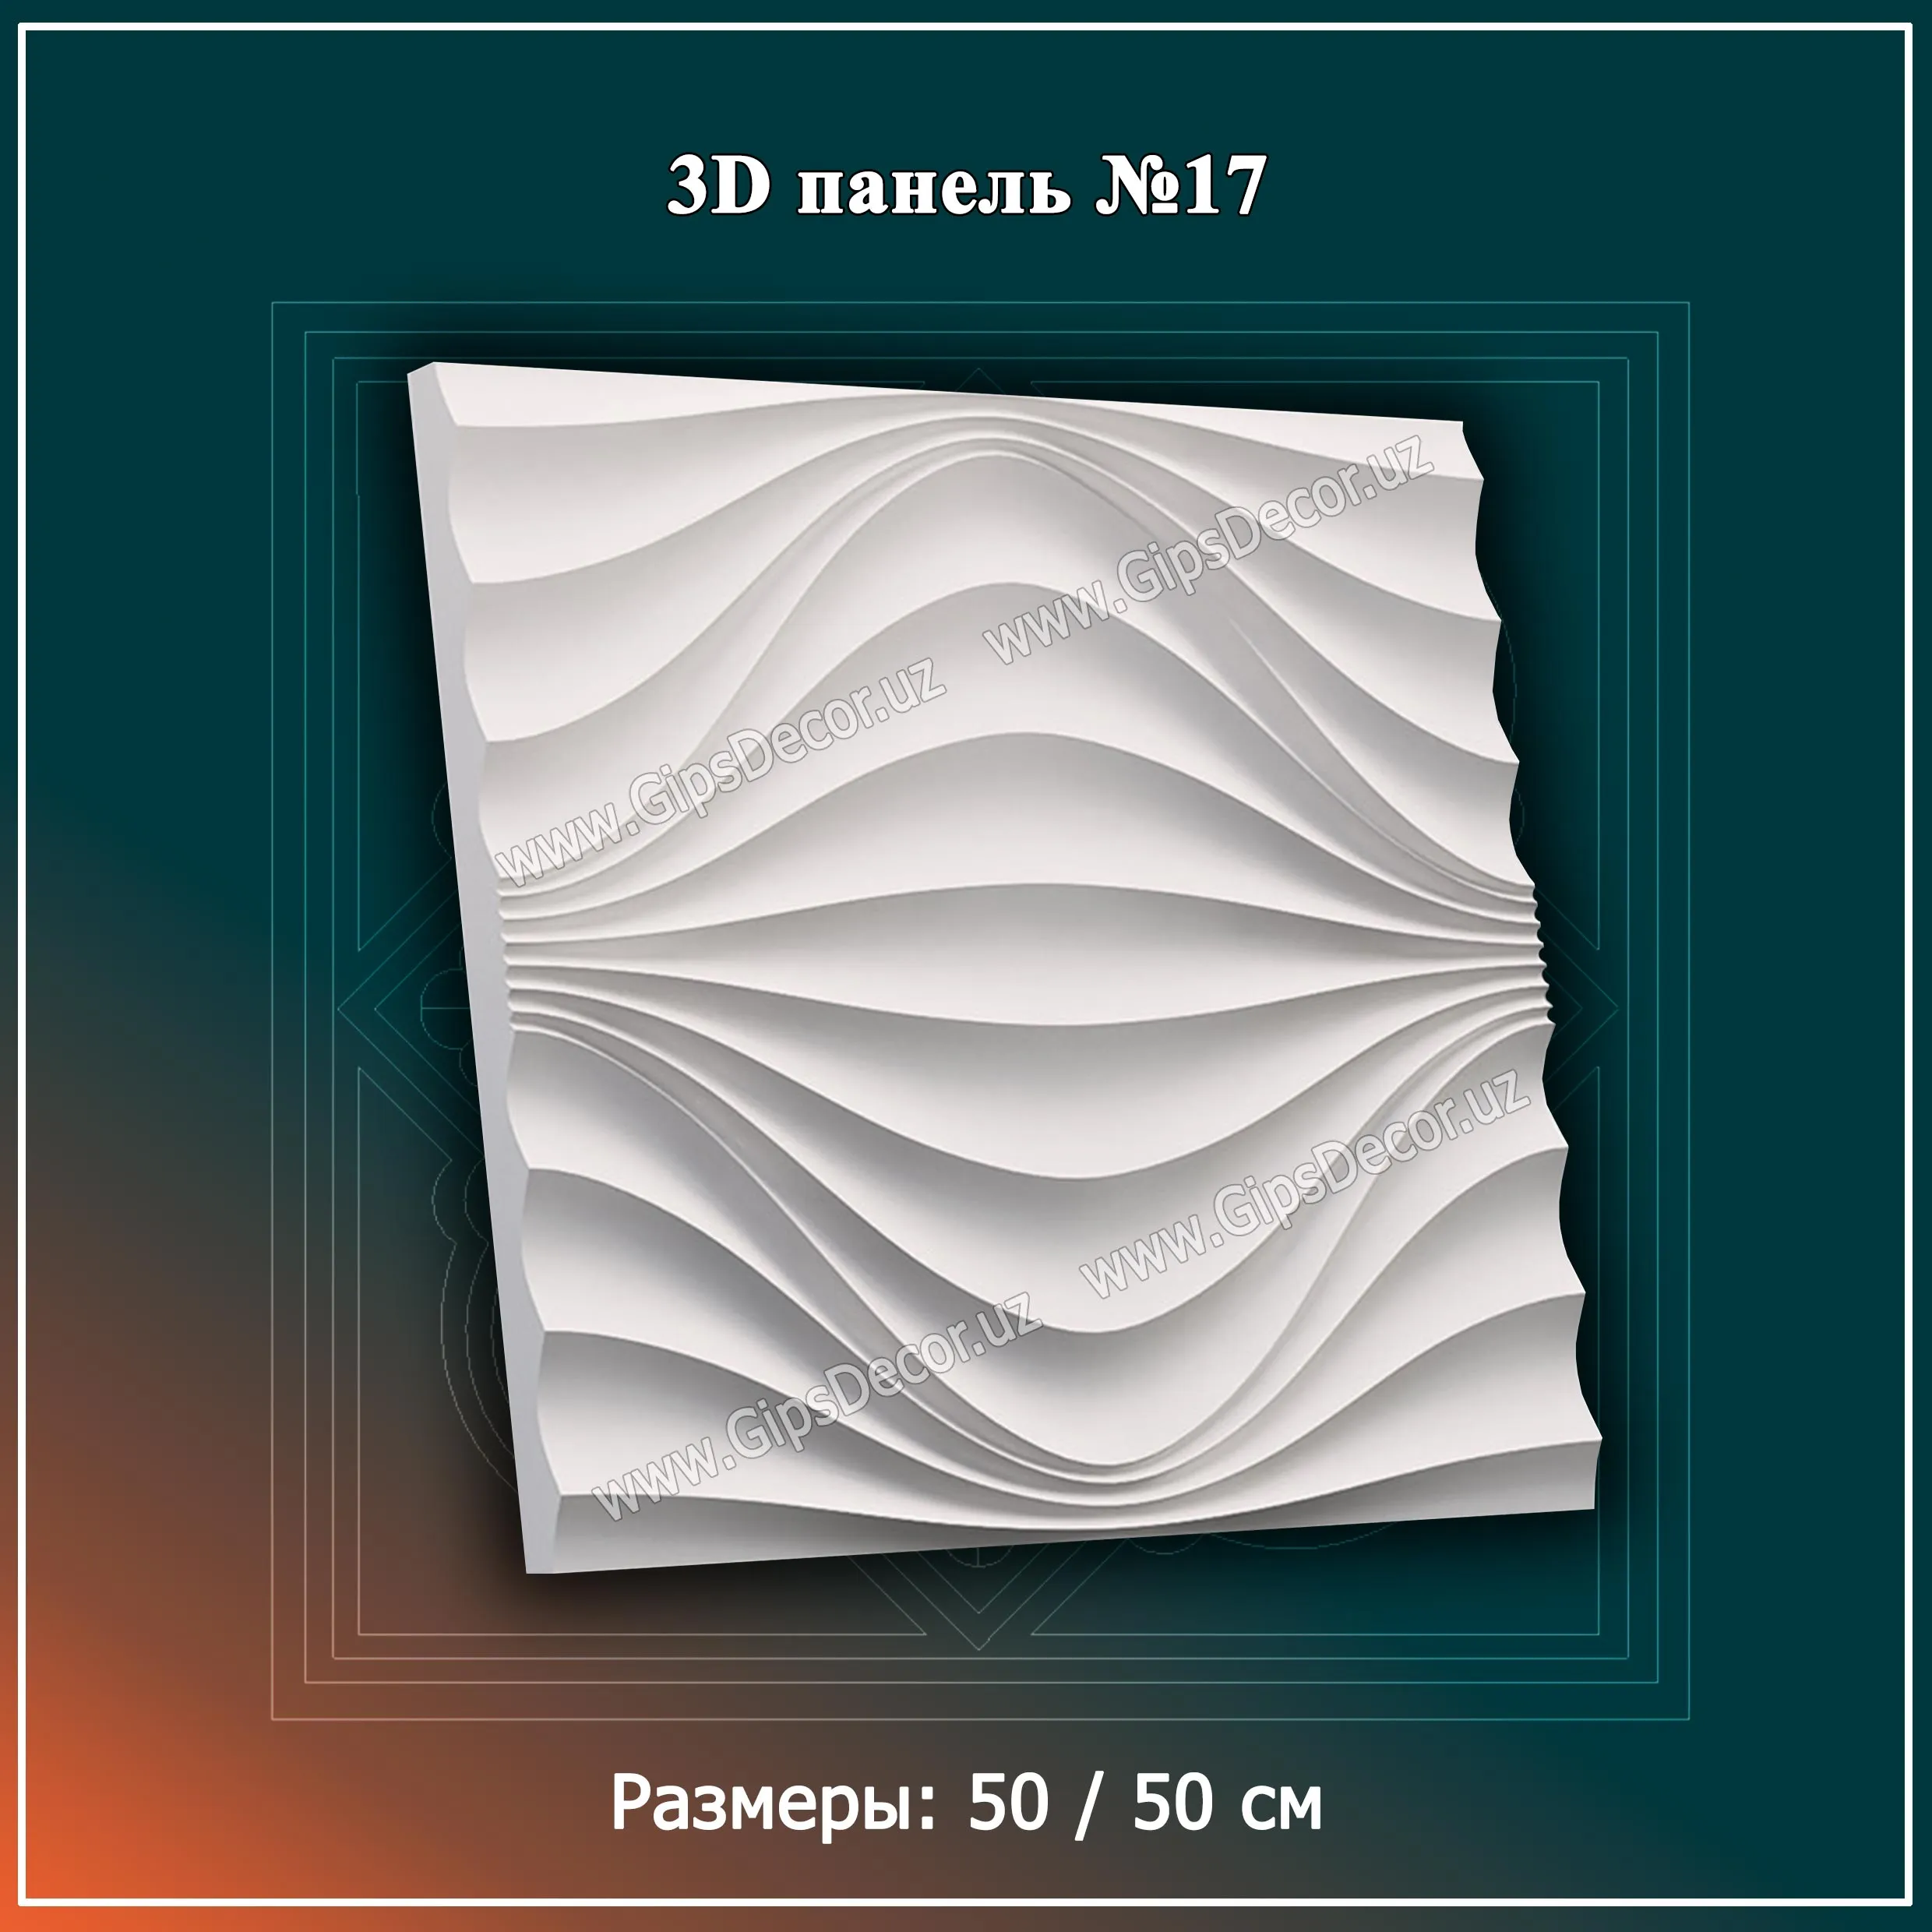 3D Панель №17 Размеры: 50 / 50 см#1